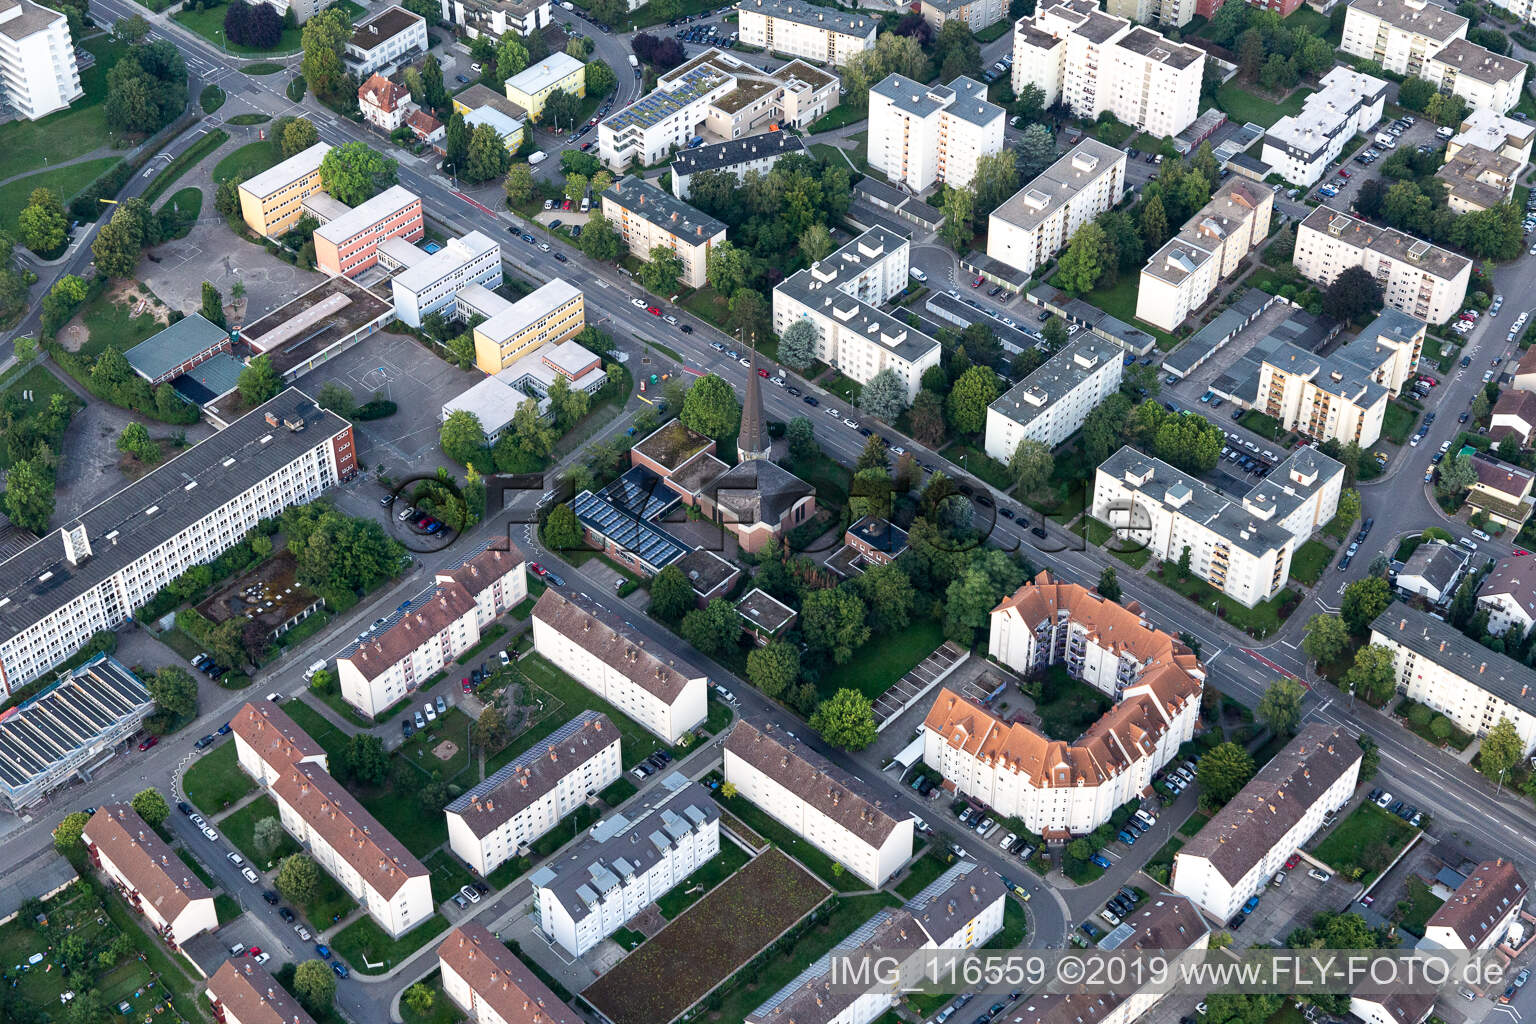 Vue aérienne de L'église Saint-Jean à Speyer dans le département Rhénanie-Palatinat, Allemagne